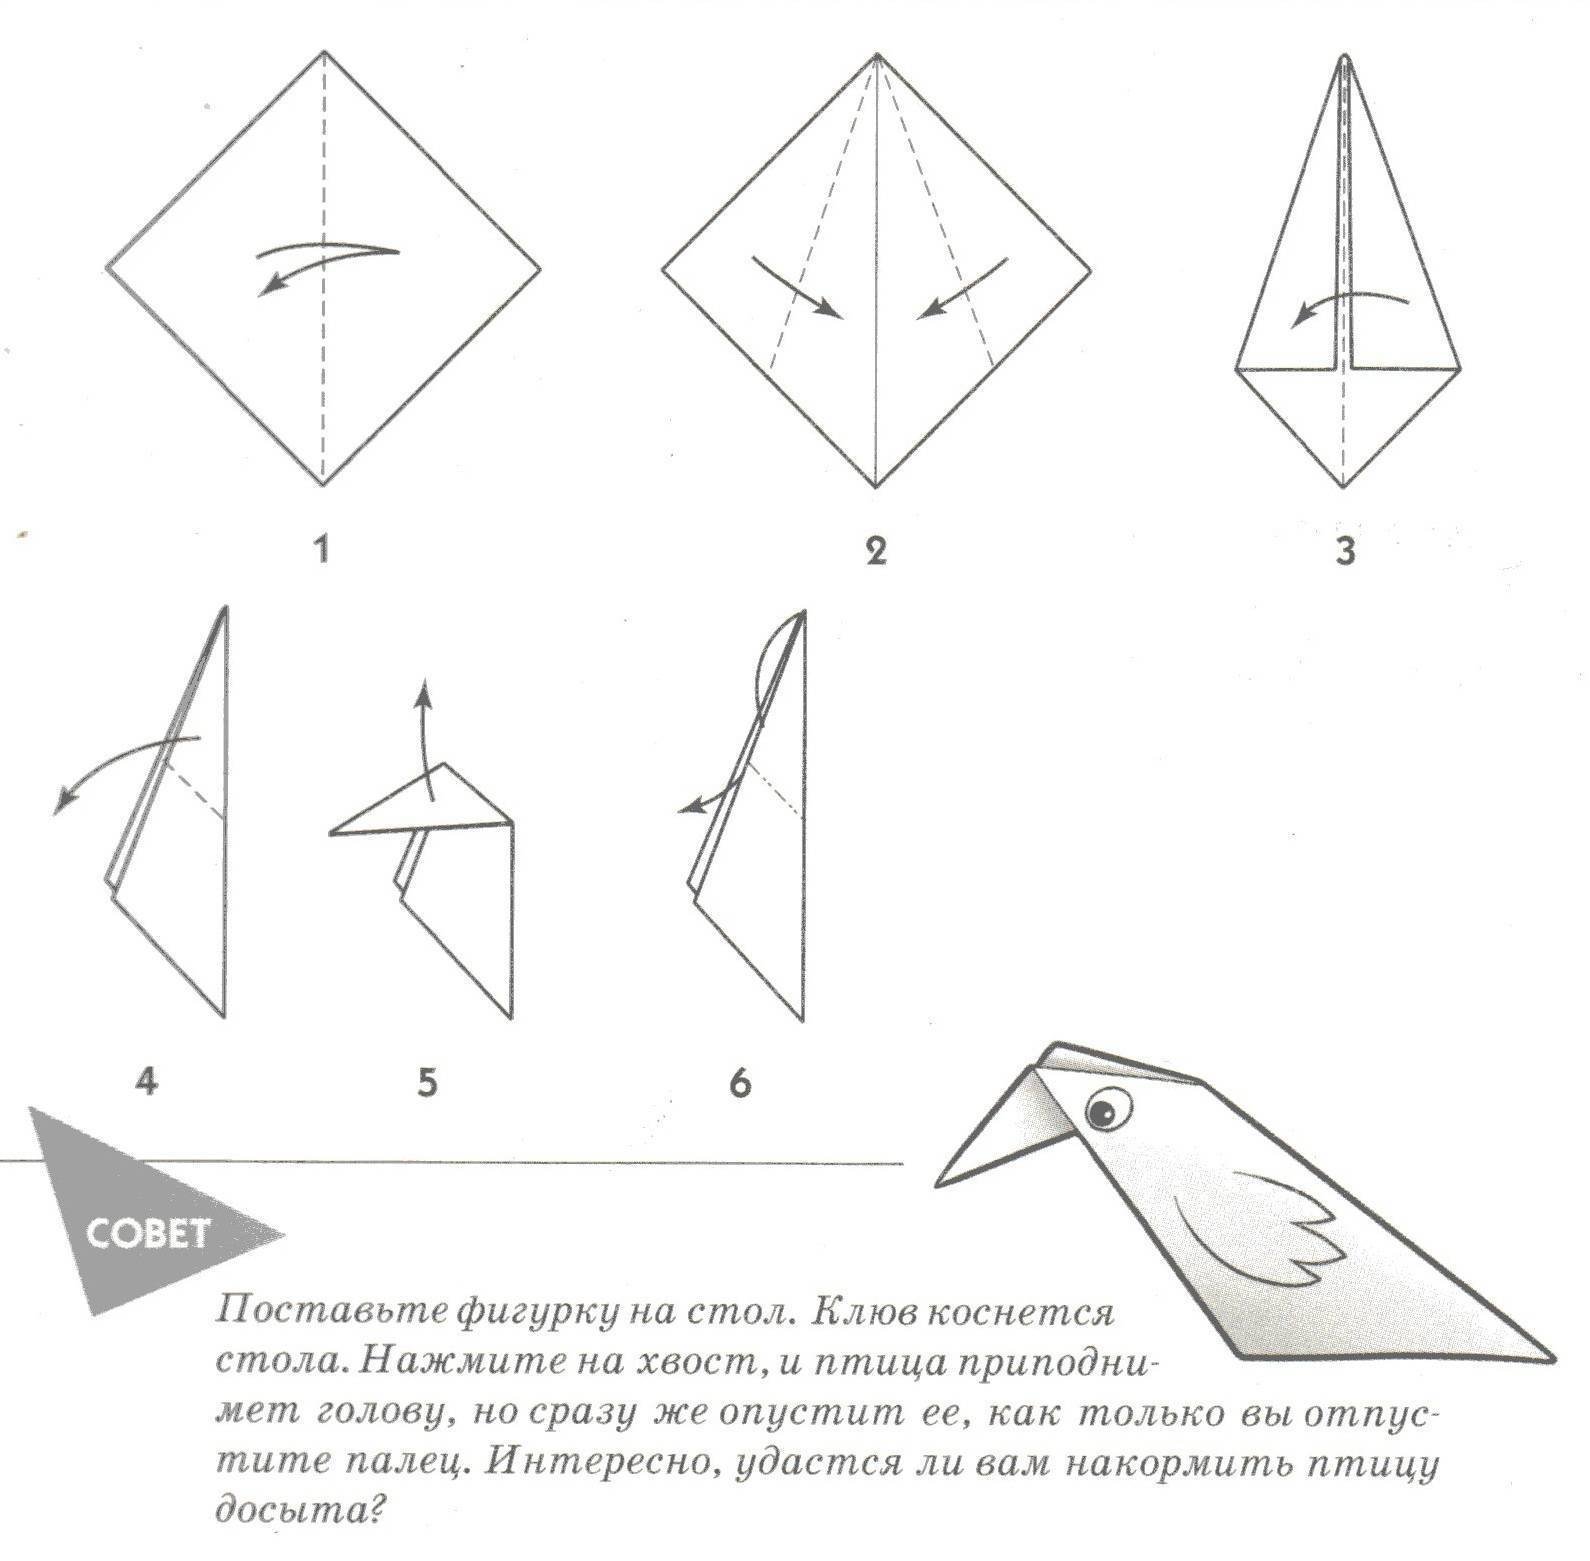 Простая птичка из бумаги. Оригами птичка из бумаги для детей простая. Птица оригами из бумаги простая схема для детей. Птица оригами простая схема для детей. Оригами птица из бумаги пошаговая инструкция для детей 5 лет.